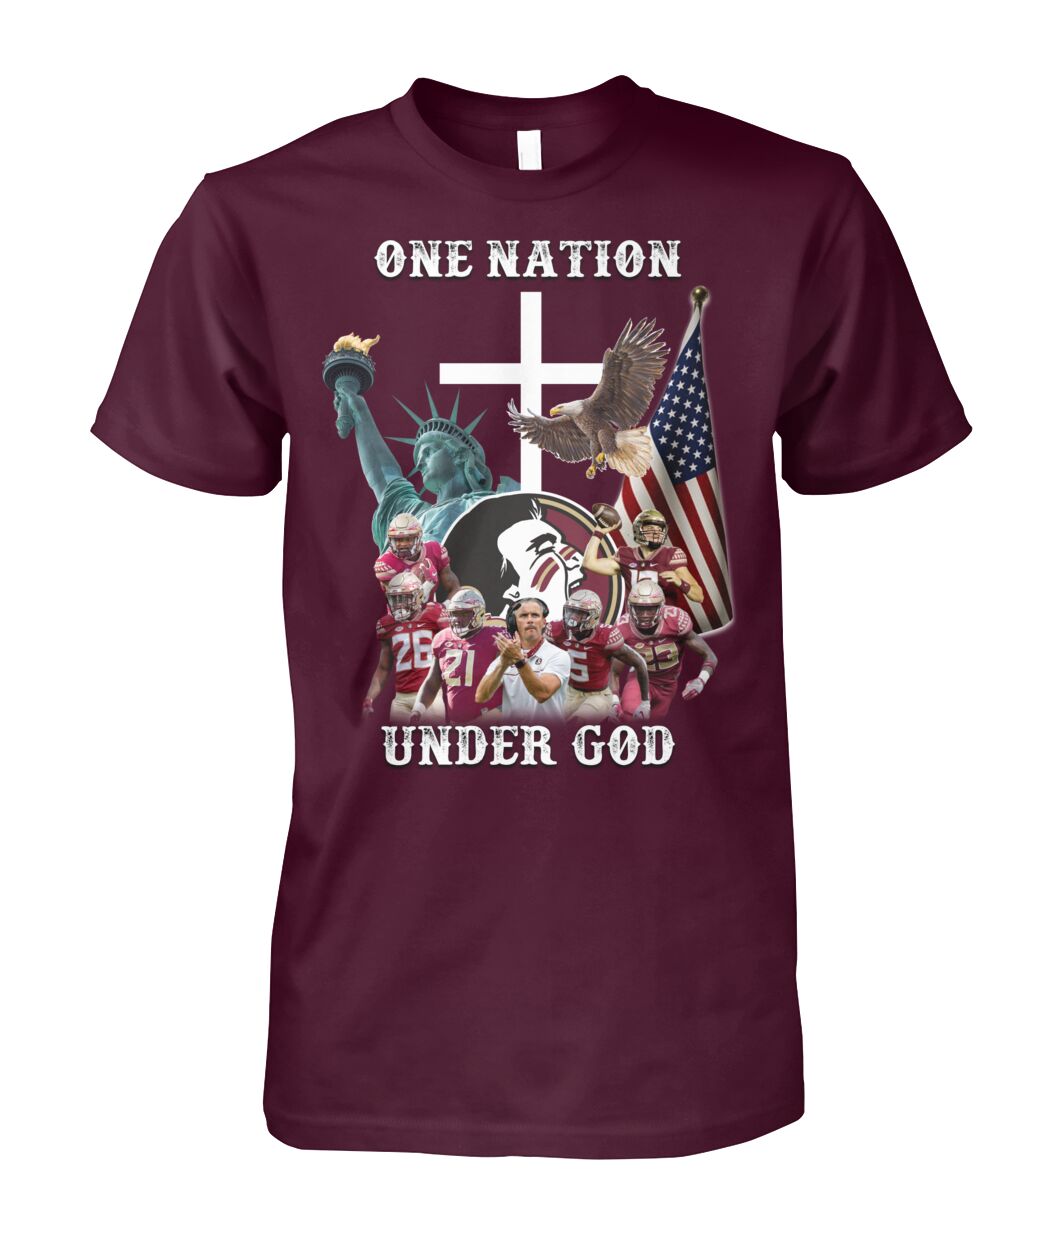 Washington Redskins One nation under god shirt as